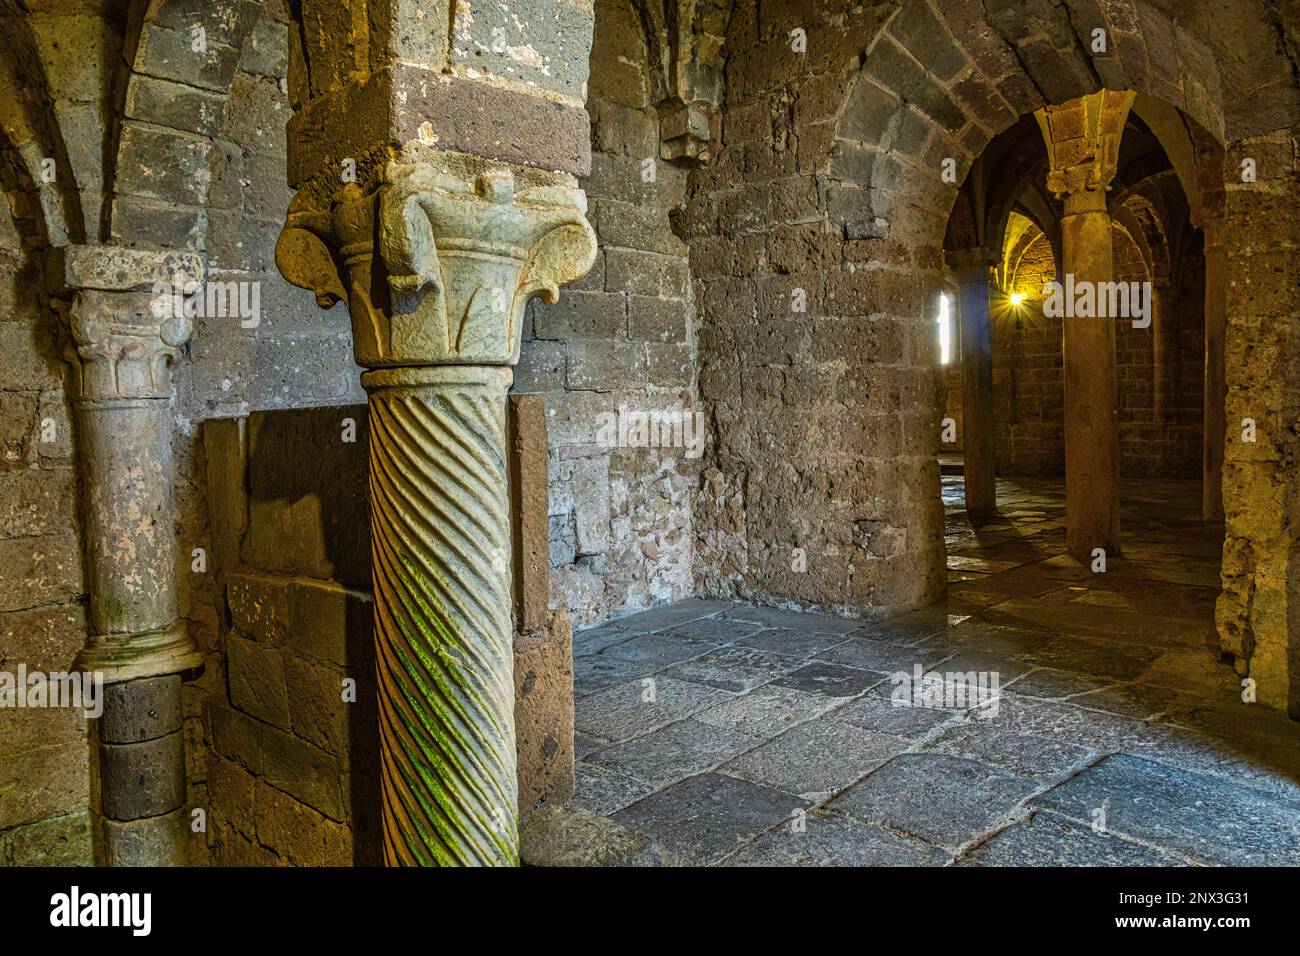 La colonnade qui soutient les voûtes croisées de la crypte de la Basilique de San Pietro en Tuscania. Tuscania, province de Viterbo, Latium, Italie, Europe Banque D'Images